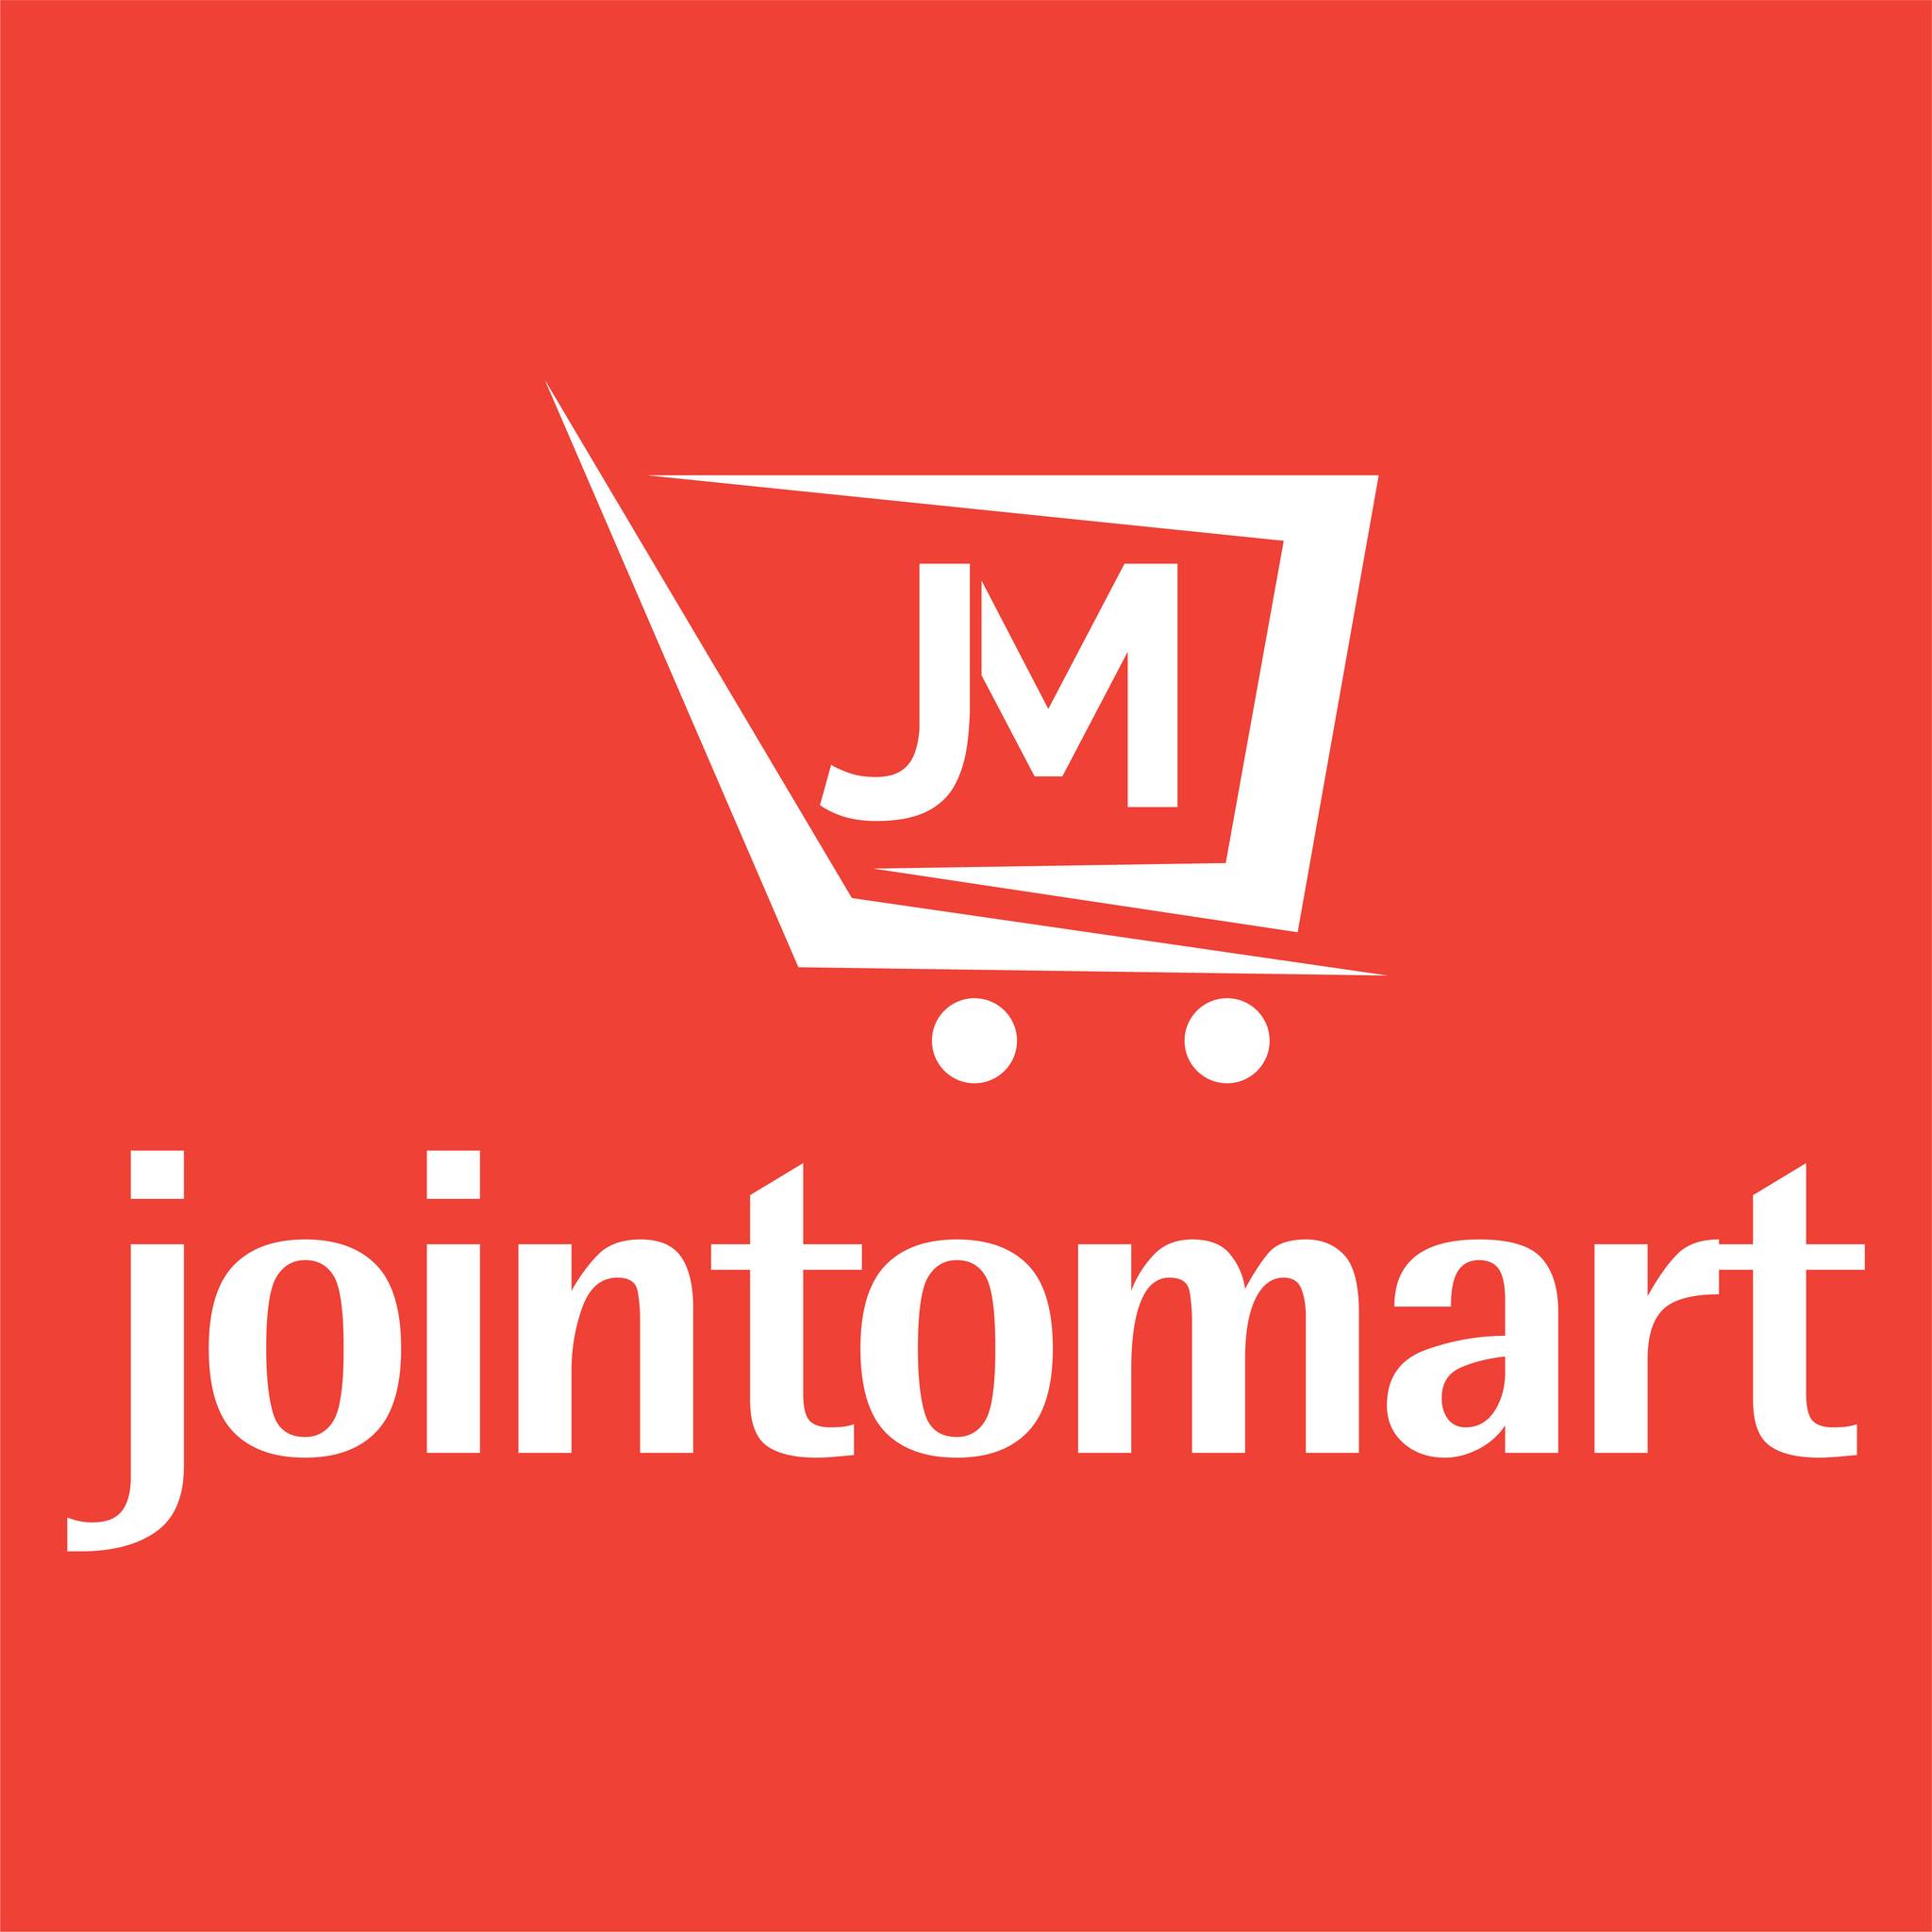 Jointomart: Revolutionizing E-commerce Through Community